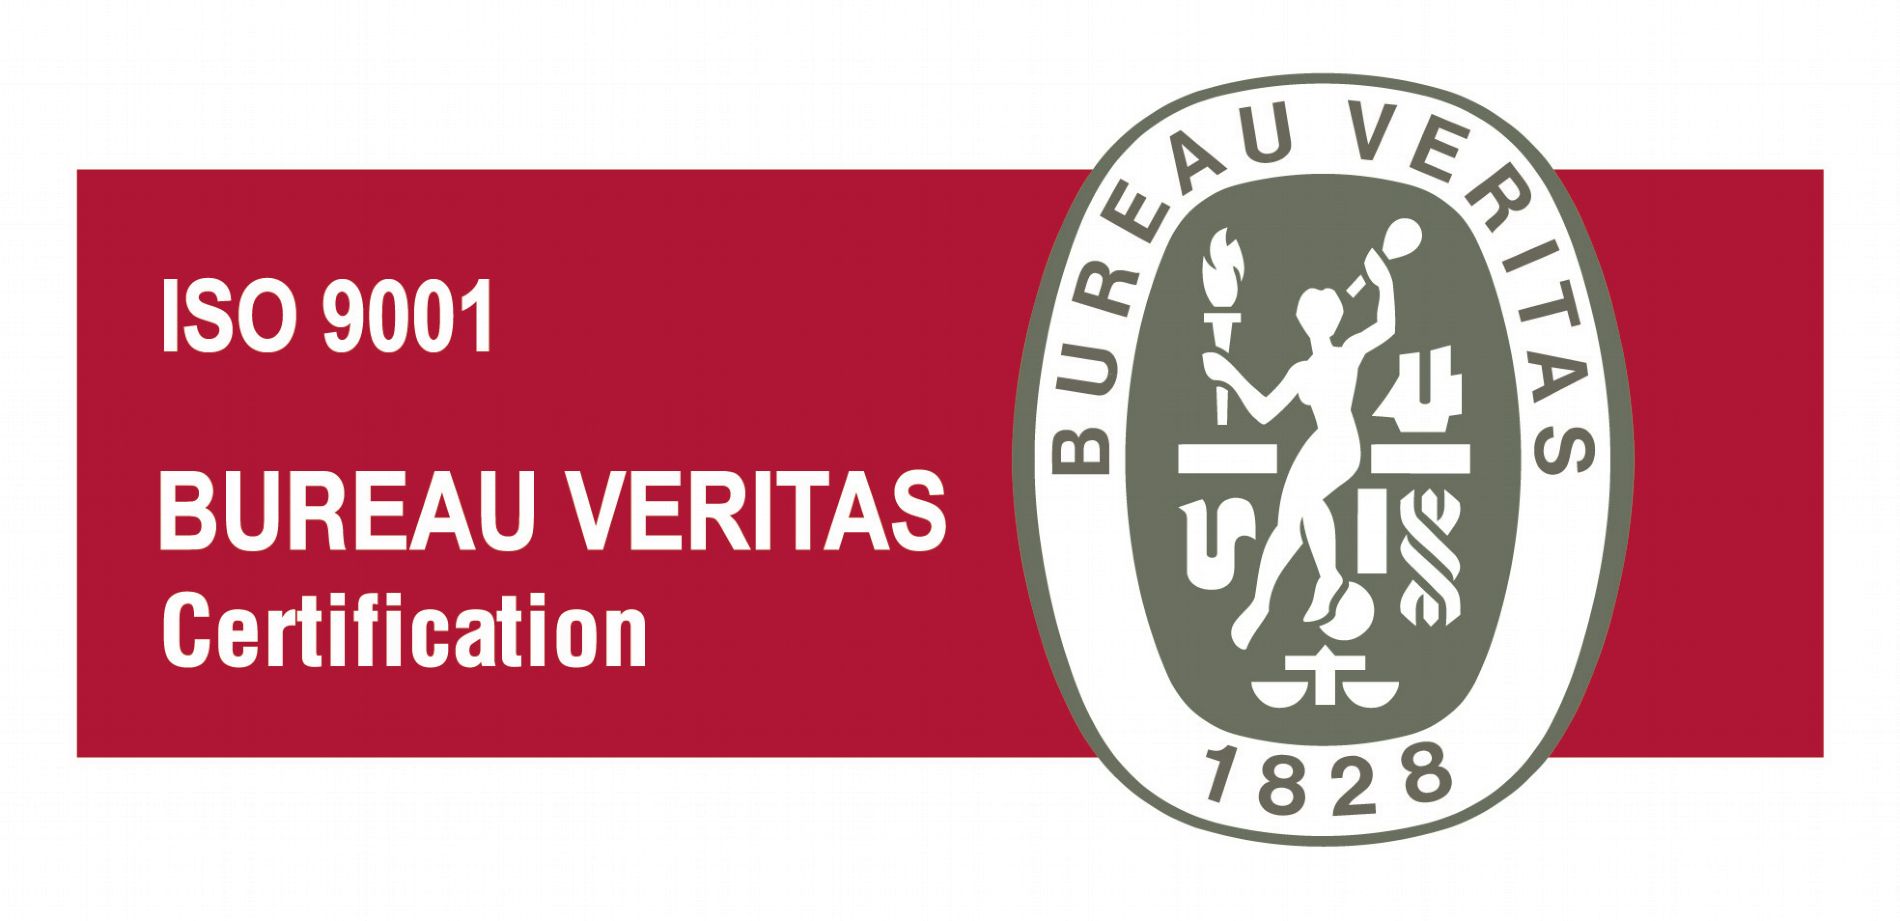 Calidad Carbotecnia certificada por Bureau Veritas con ISO 9001:2015